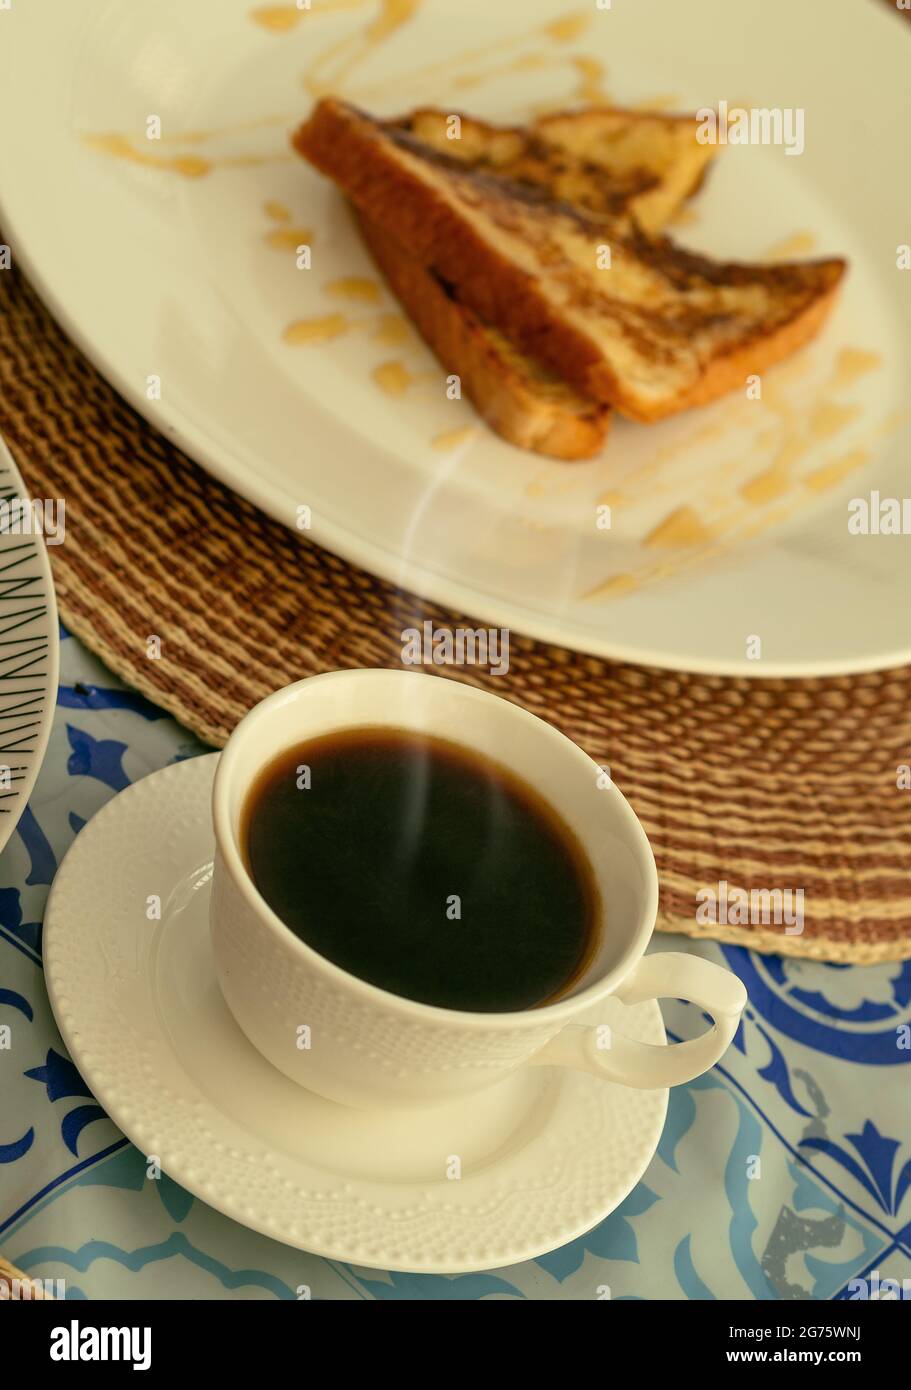 Una tazza bianca di caffè nero fumante accompagnata da un po' di toast alla francese per la colazione o il brunch Foto Stock